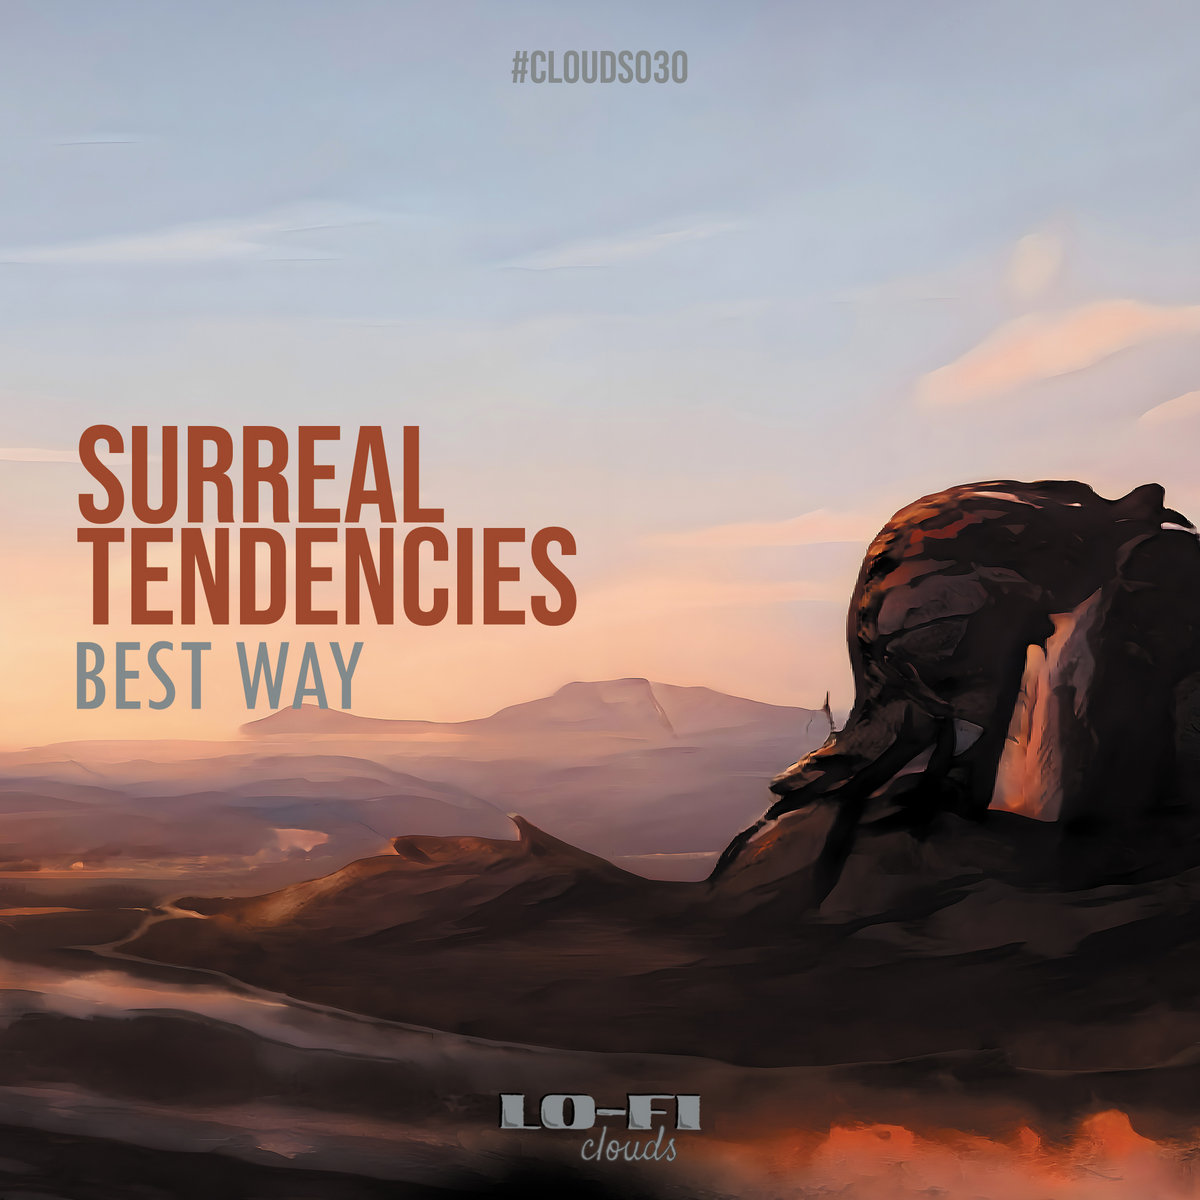 Surreal Tendencies - Best Way - CLOUDS030